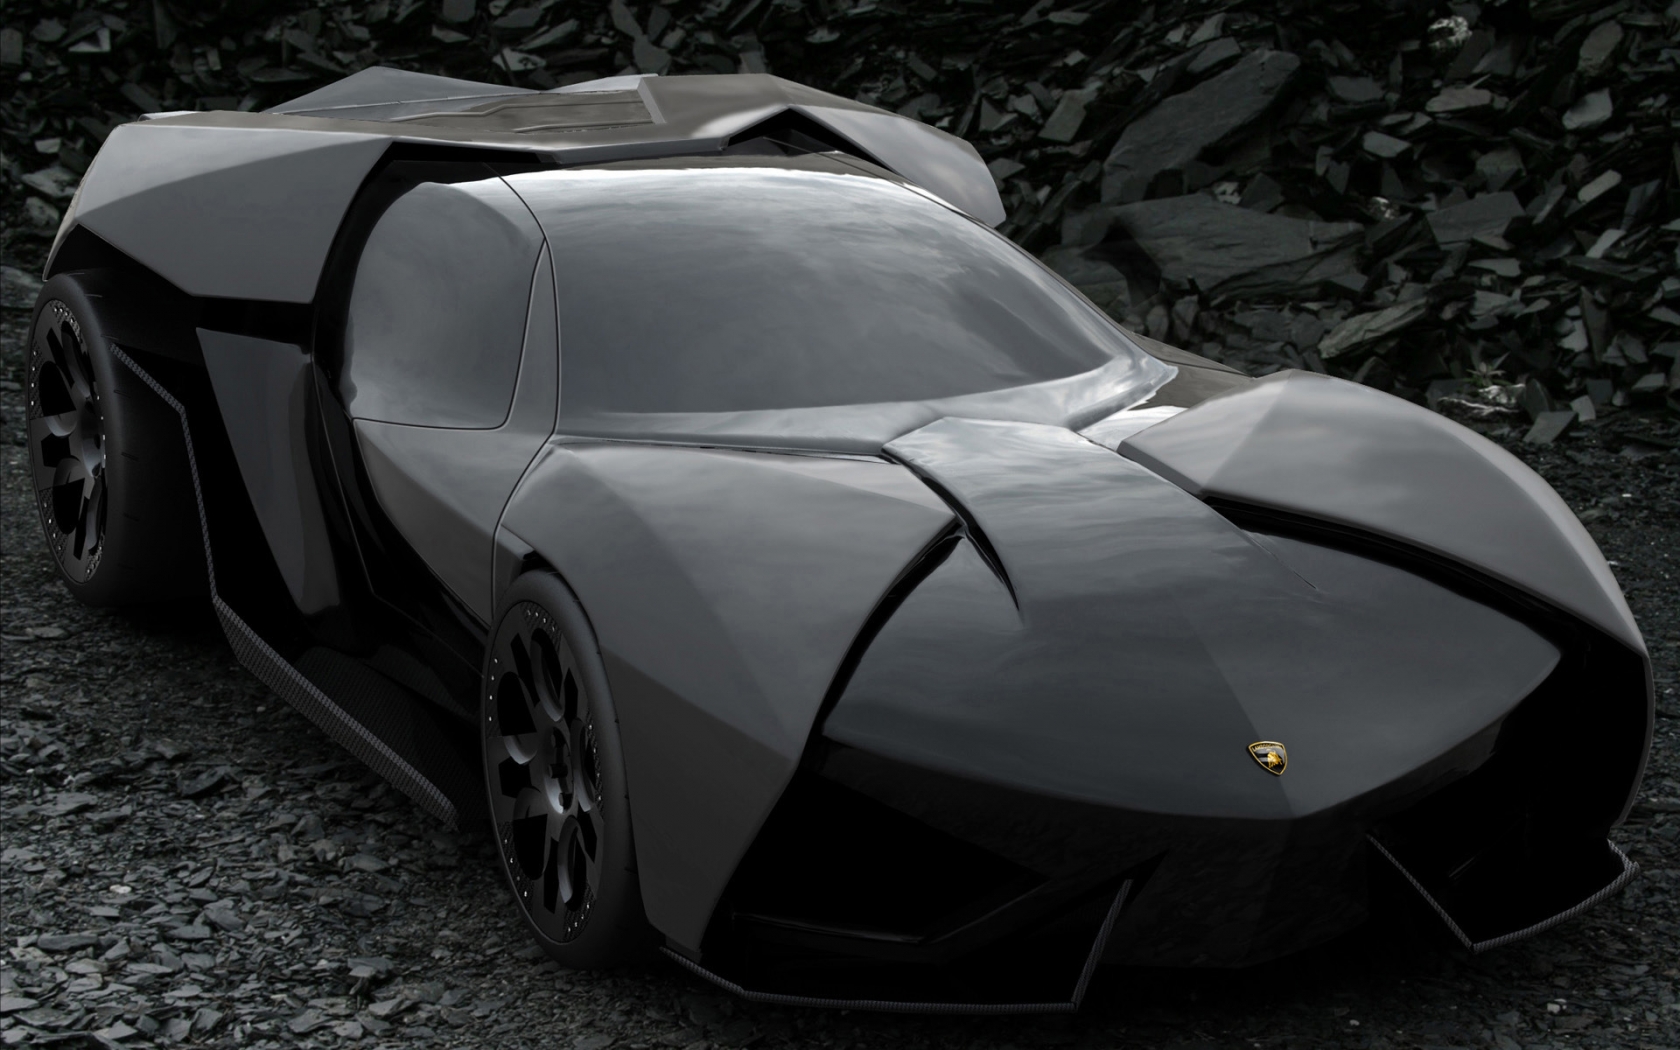 Lamborghini Ankonian Concept for 1680 x 1050 widescreen resolution